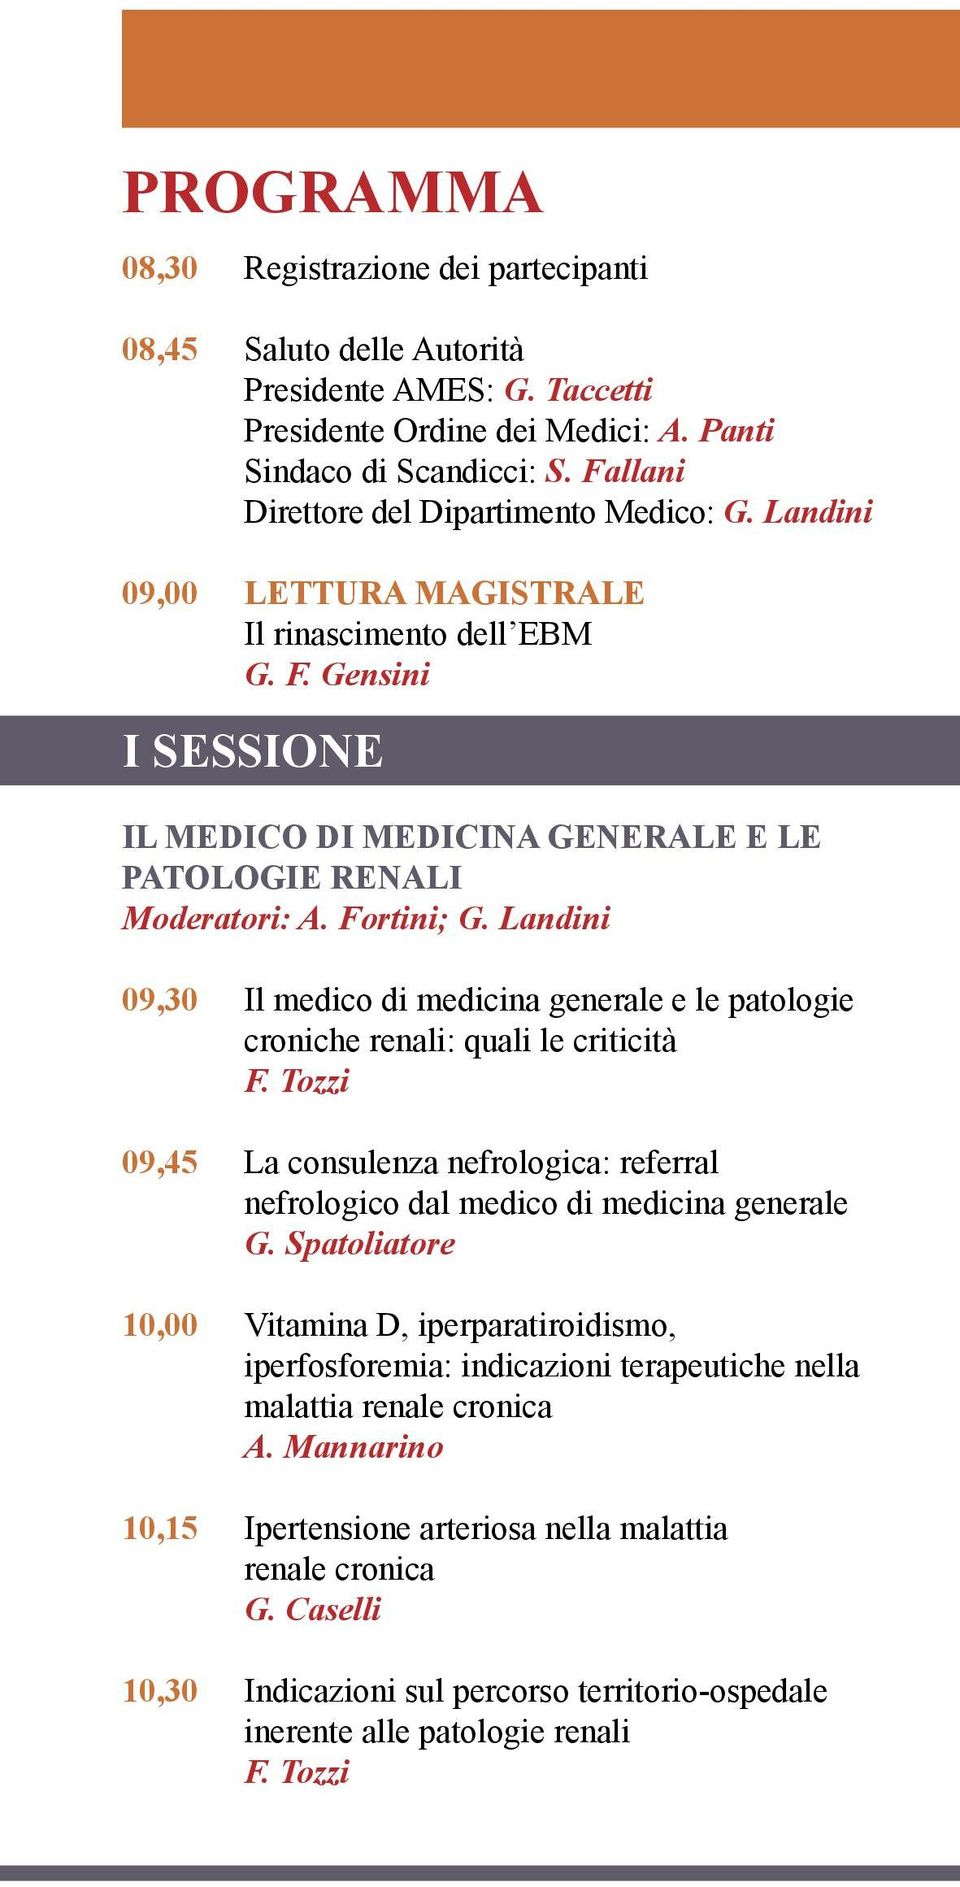 Fortini; G. Landini 09,30 Il medico di medicina generale e le patologie croniche renali: quali le criticità F.